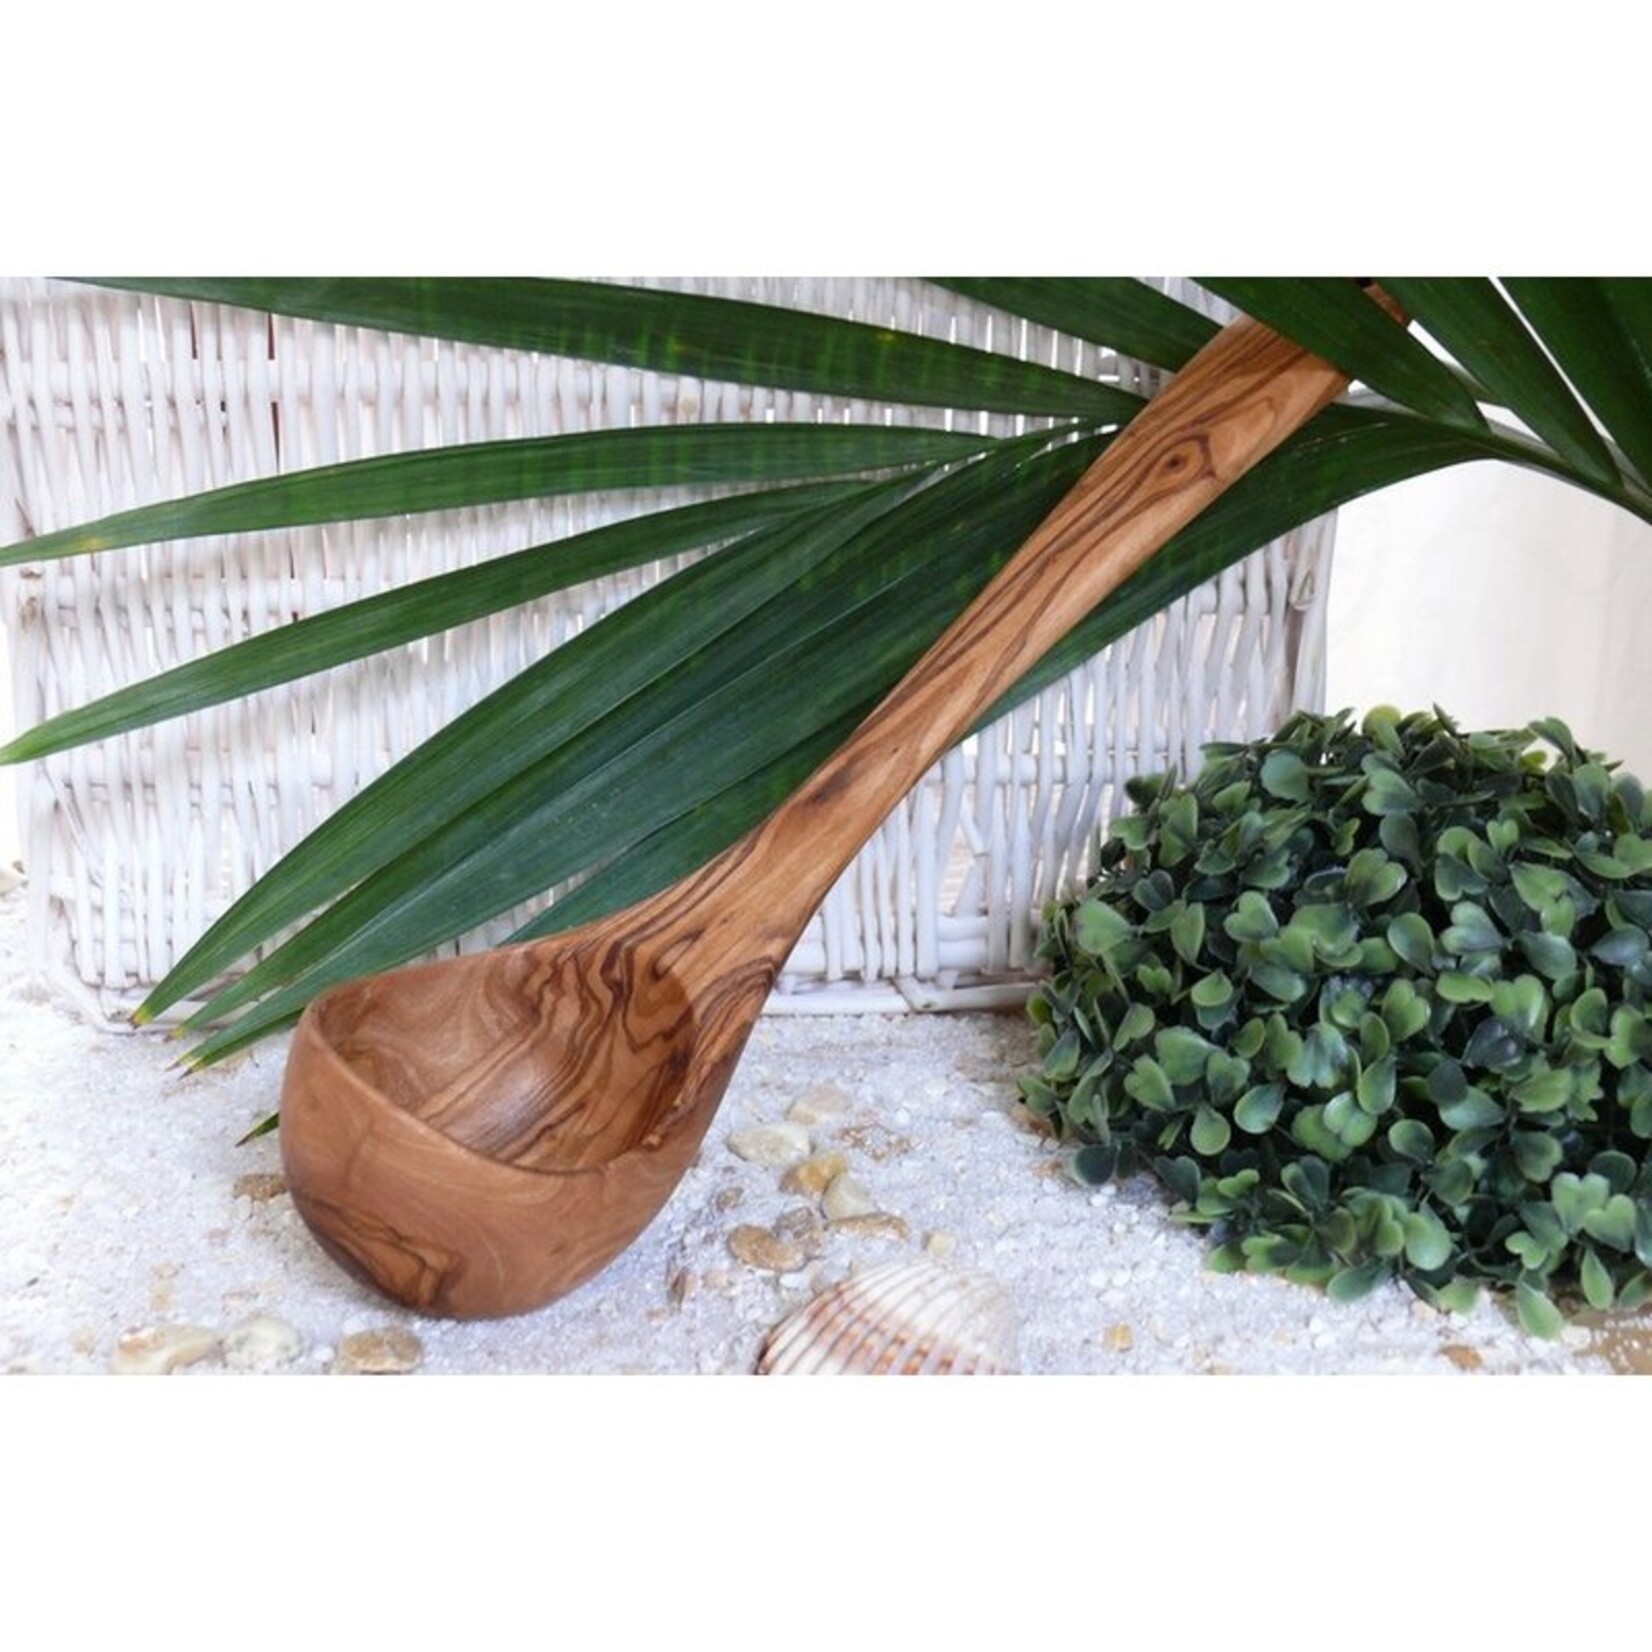 Olivenholz erleben Pollepel voor keuken & sauna 25 cm gemaakt van olijfhout